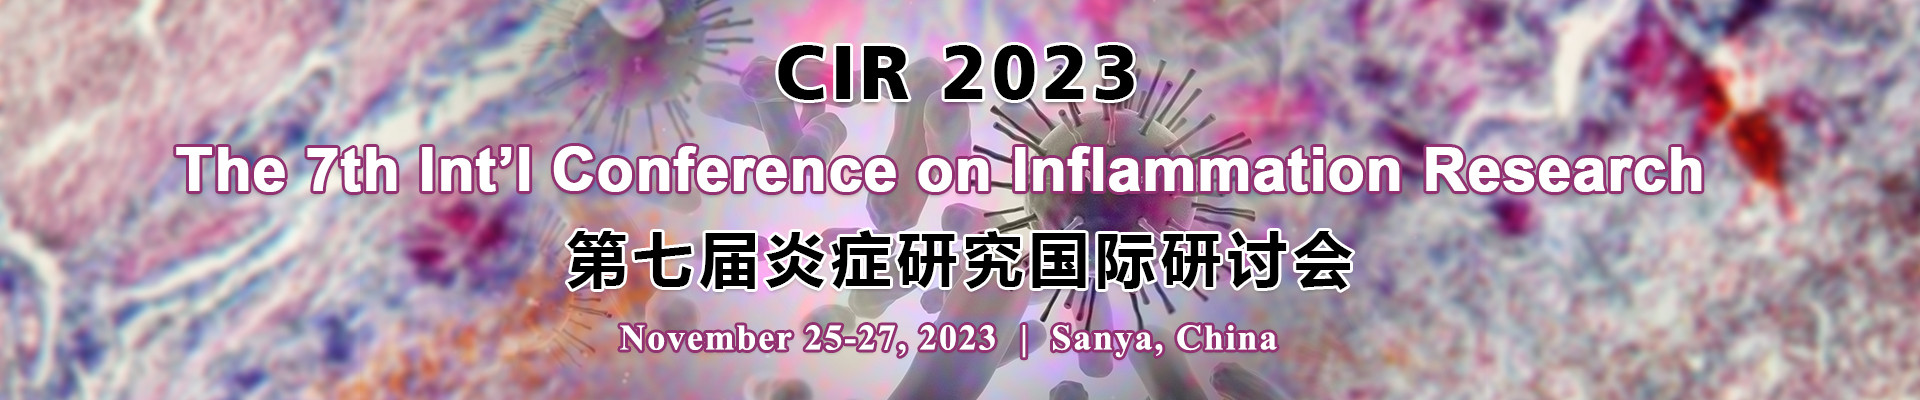 第七届炎症研究国际研讨会(CIR 2023) 